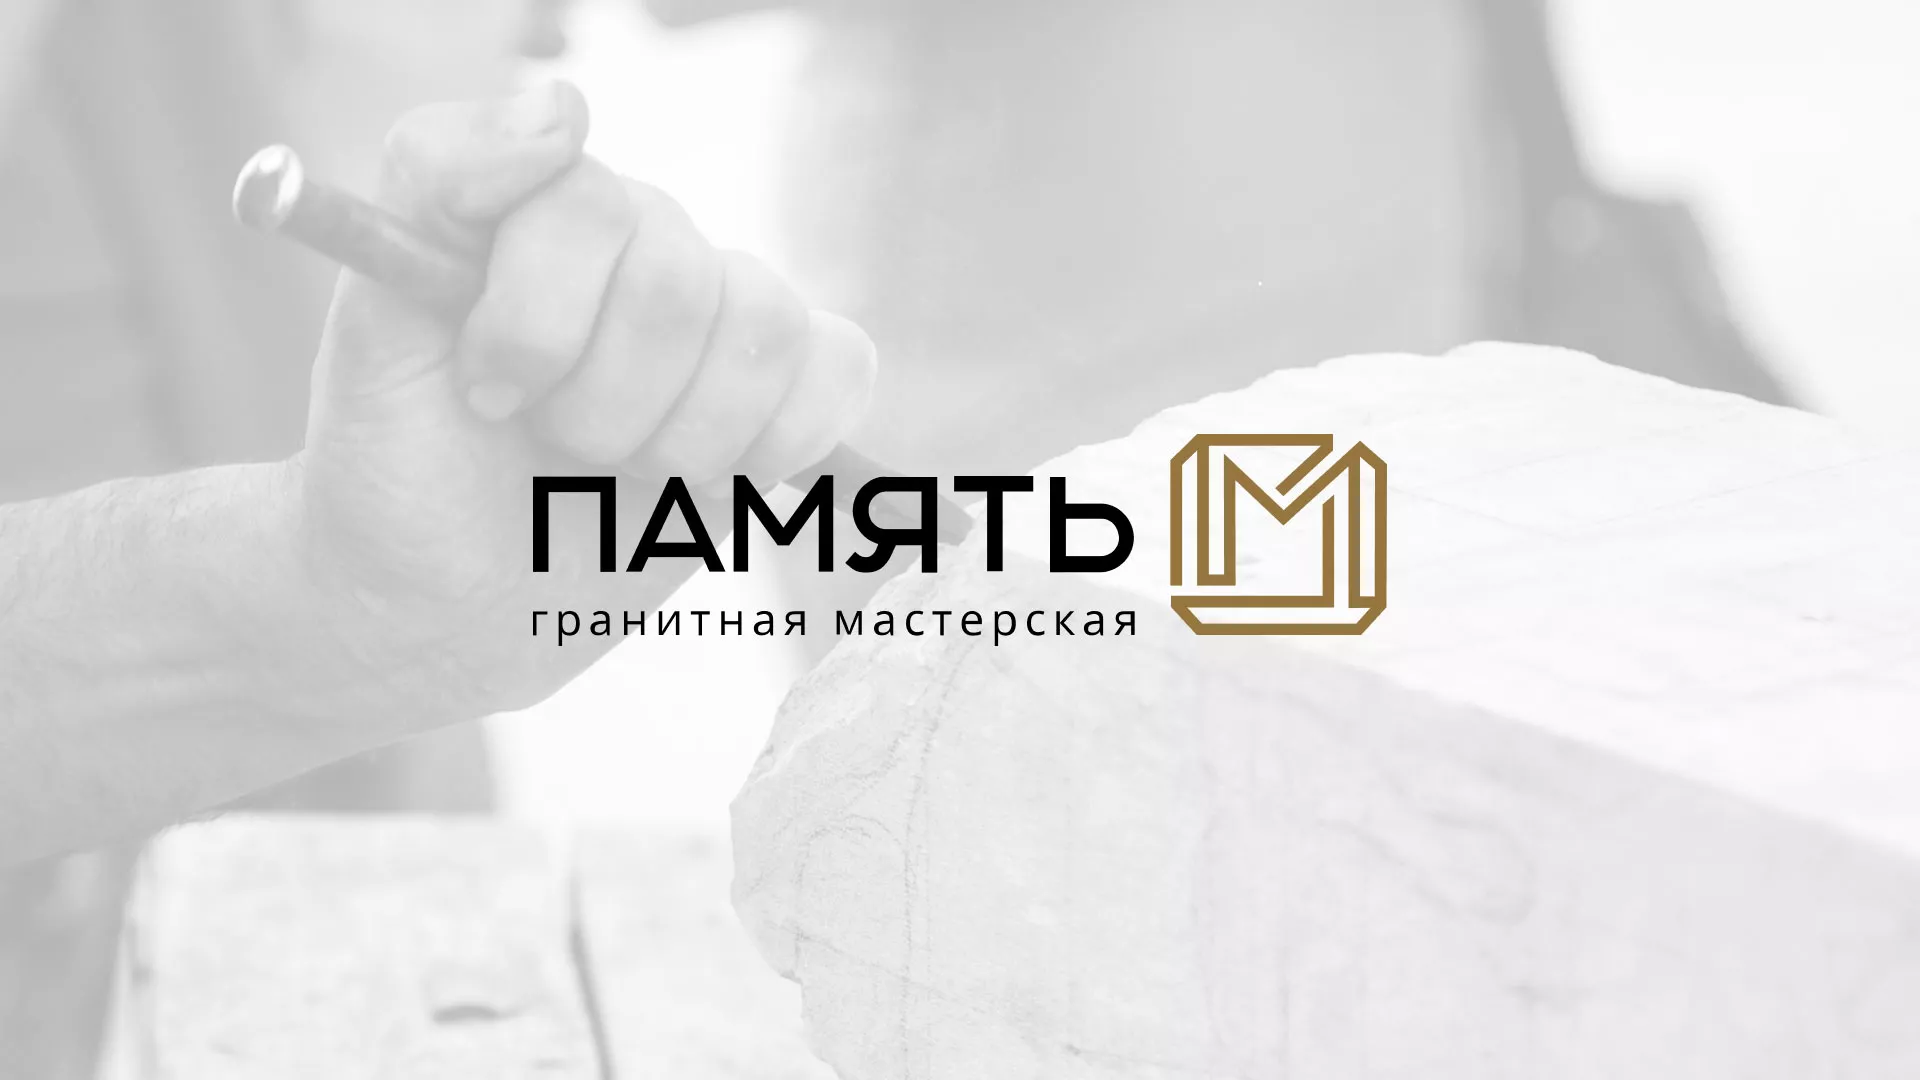 Разработка логотипа и сайта компании «Память-М» в Ладушкине